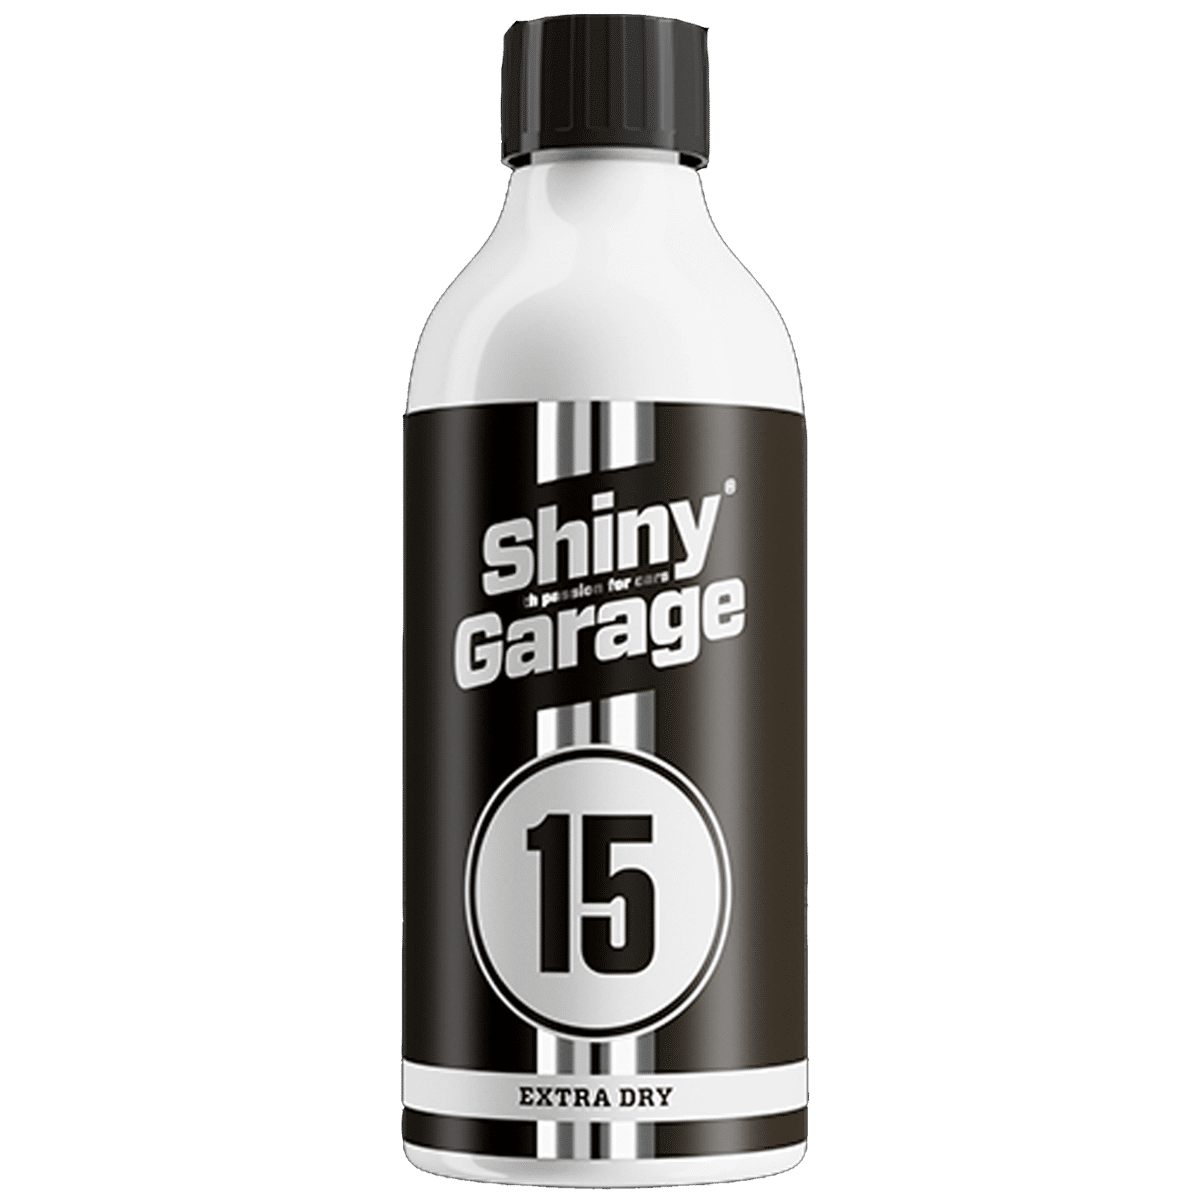 SHINY GARAGE Extra Dry Fabric Cleaner Shampoo 500ml Preparat do Czyszczenia Podsufitki i Materiałów Wrażliwych na Przemoczenie